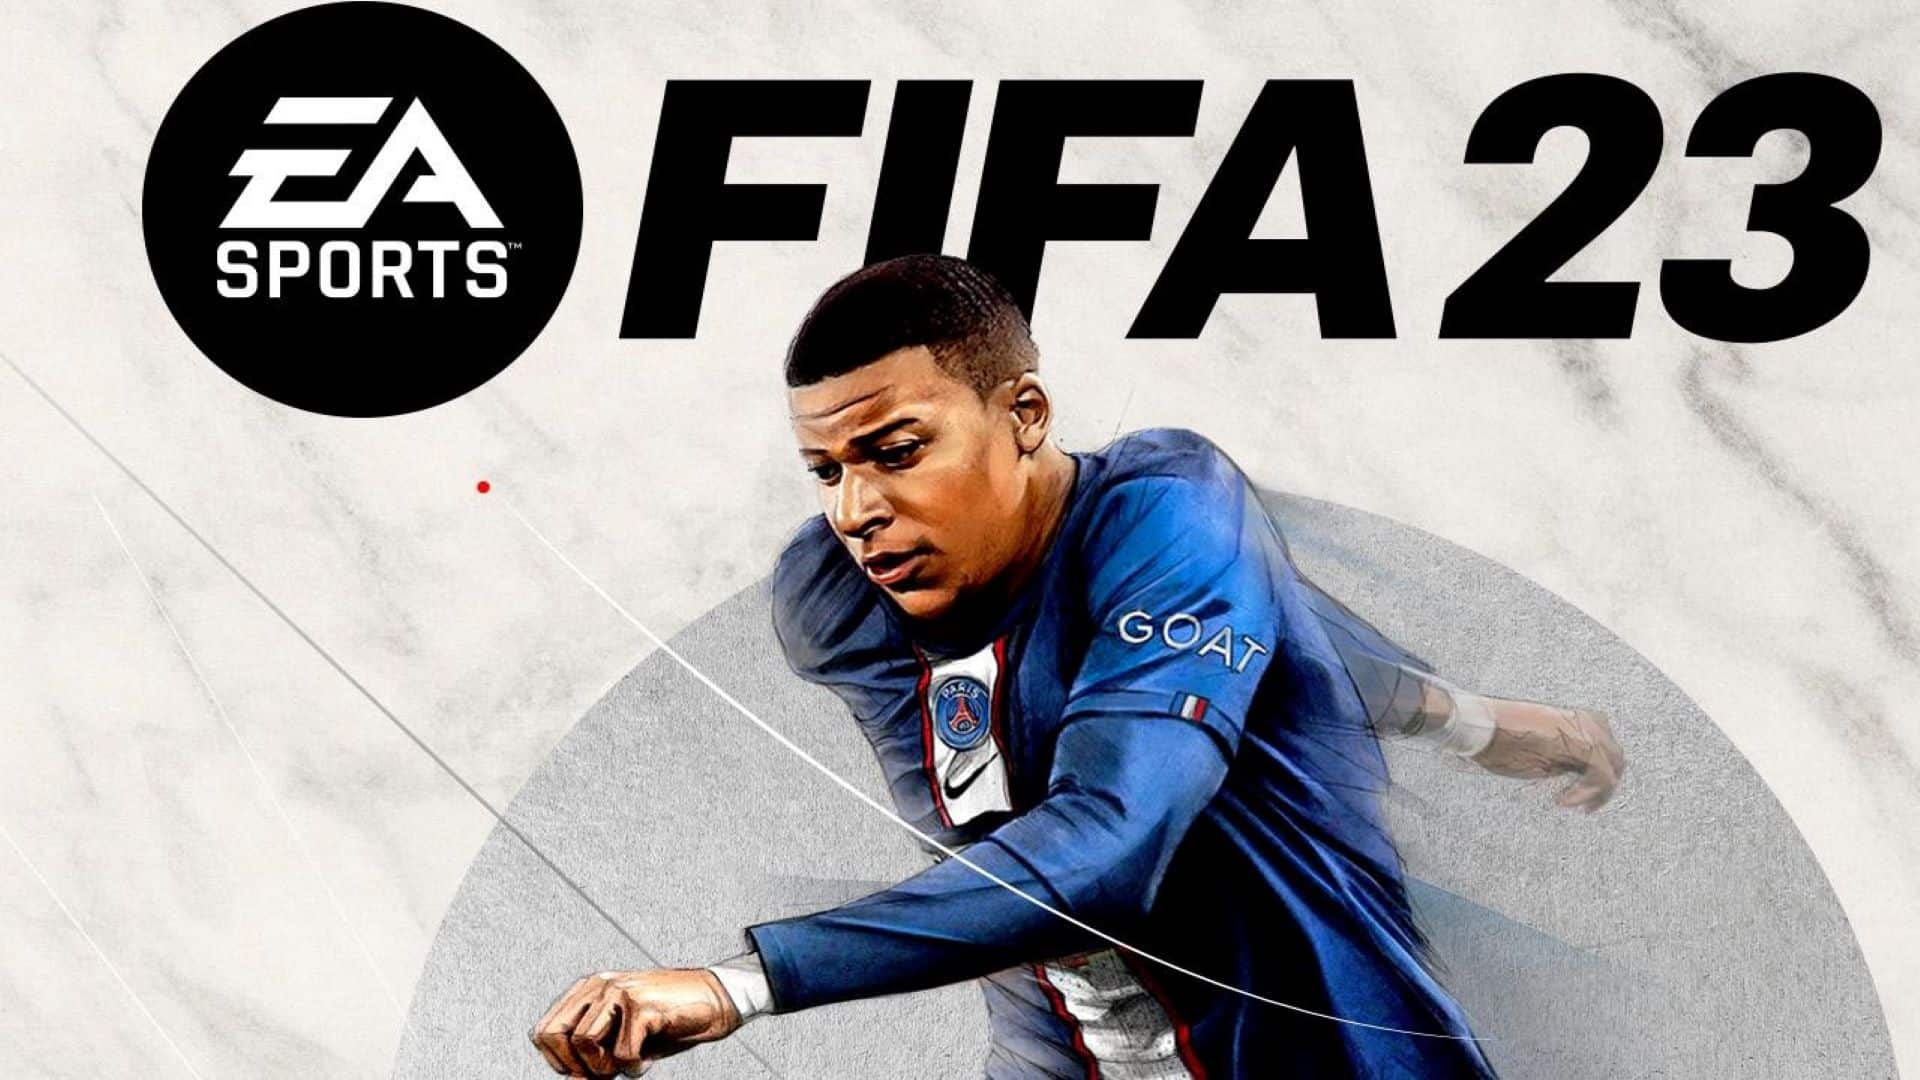 Pro Club e Volta Football: su FIFA 23 l'esperienza è condivisa thumbnail